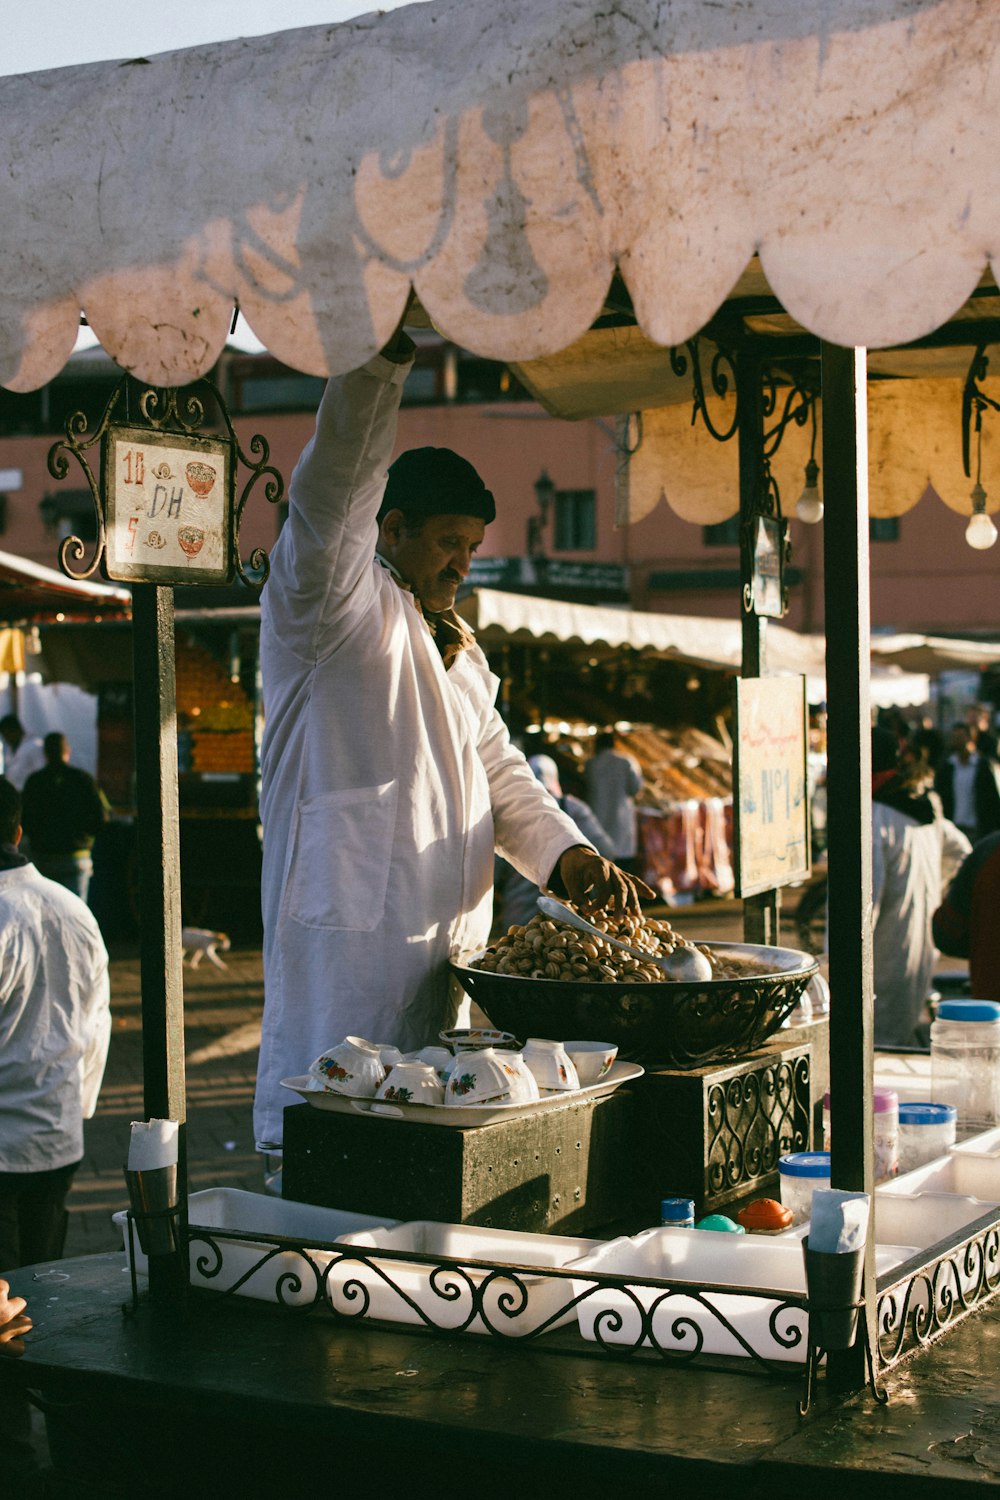 man in white shirt cooking on wok during daytime